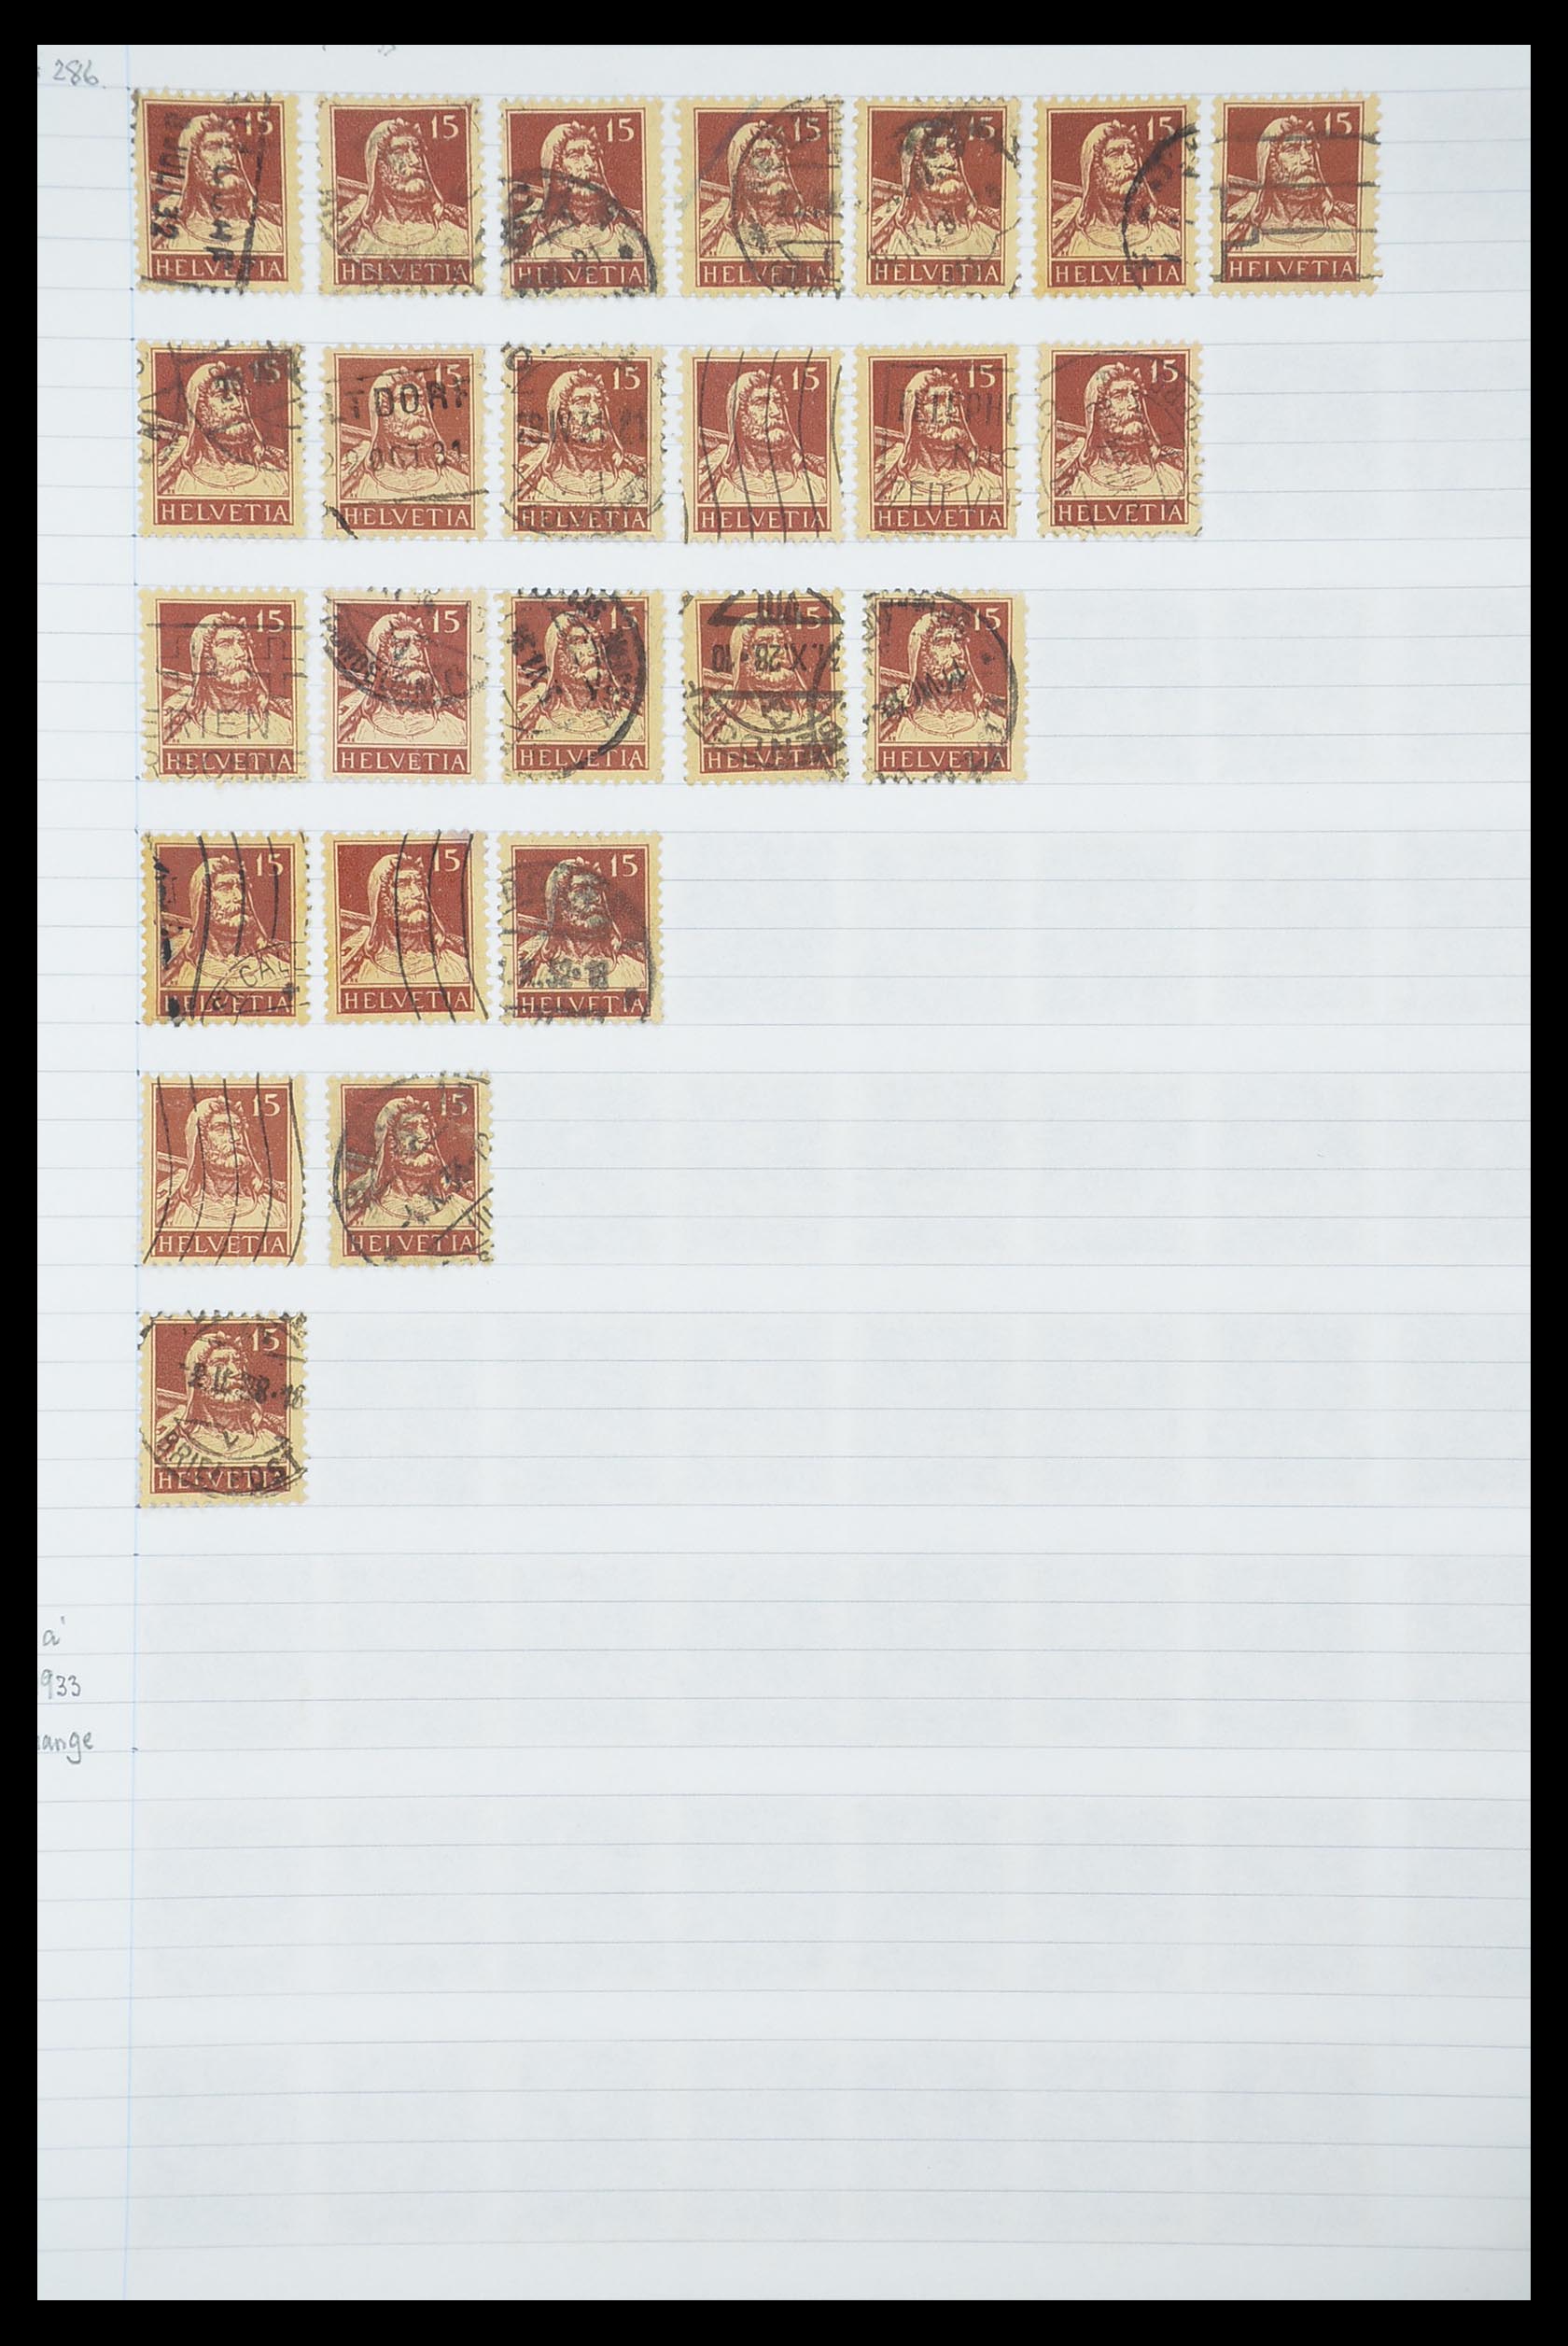 33926 382 - Postzegelverzameling 33926 Zwitserland uitzoekpartij 1850-1997.